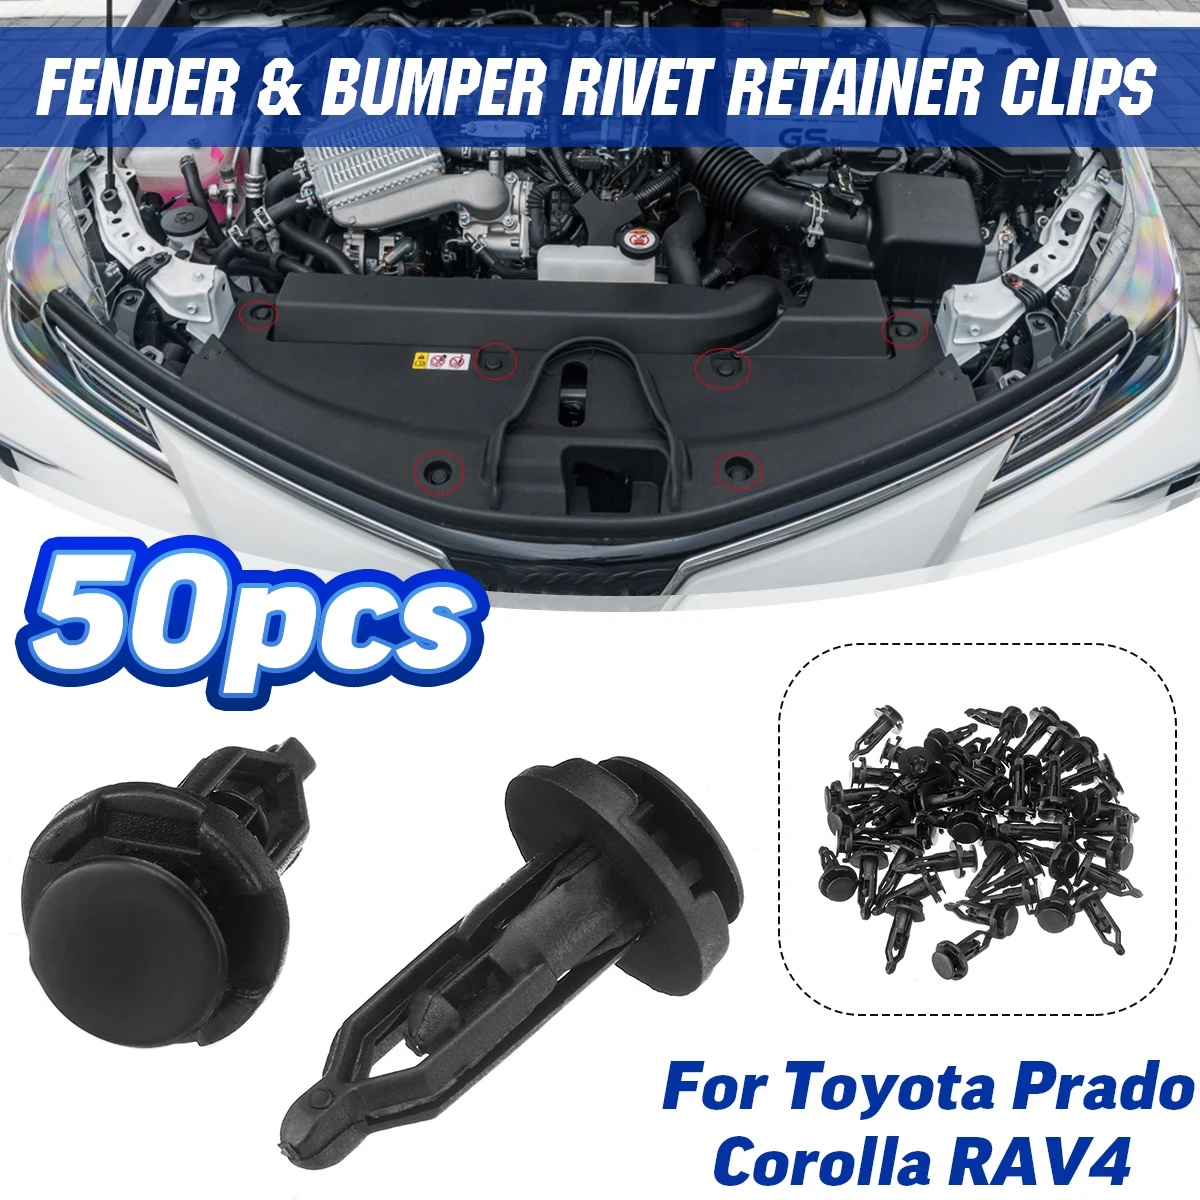 

50pcs 9mm Fender Fastener Clips Bumper Rivet Retainer Fixed Clamps for Toyota Prado Corolla RAV4